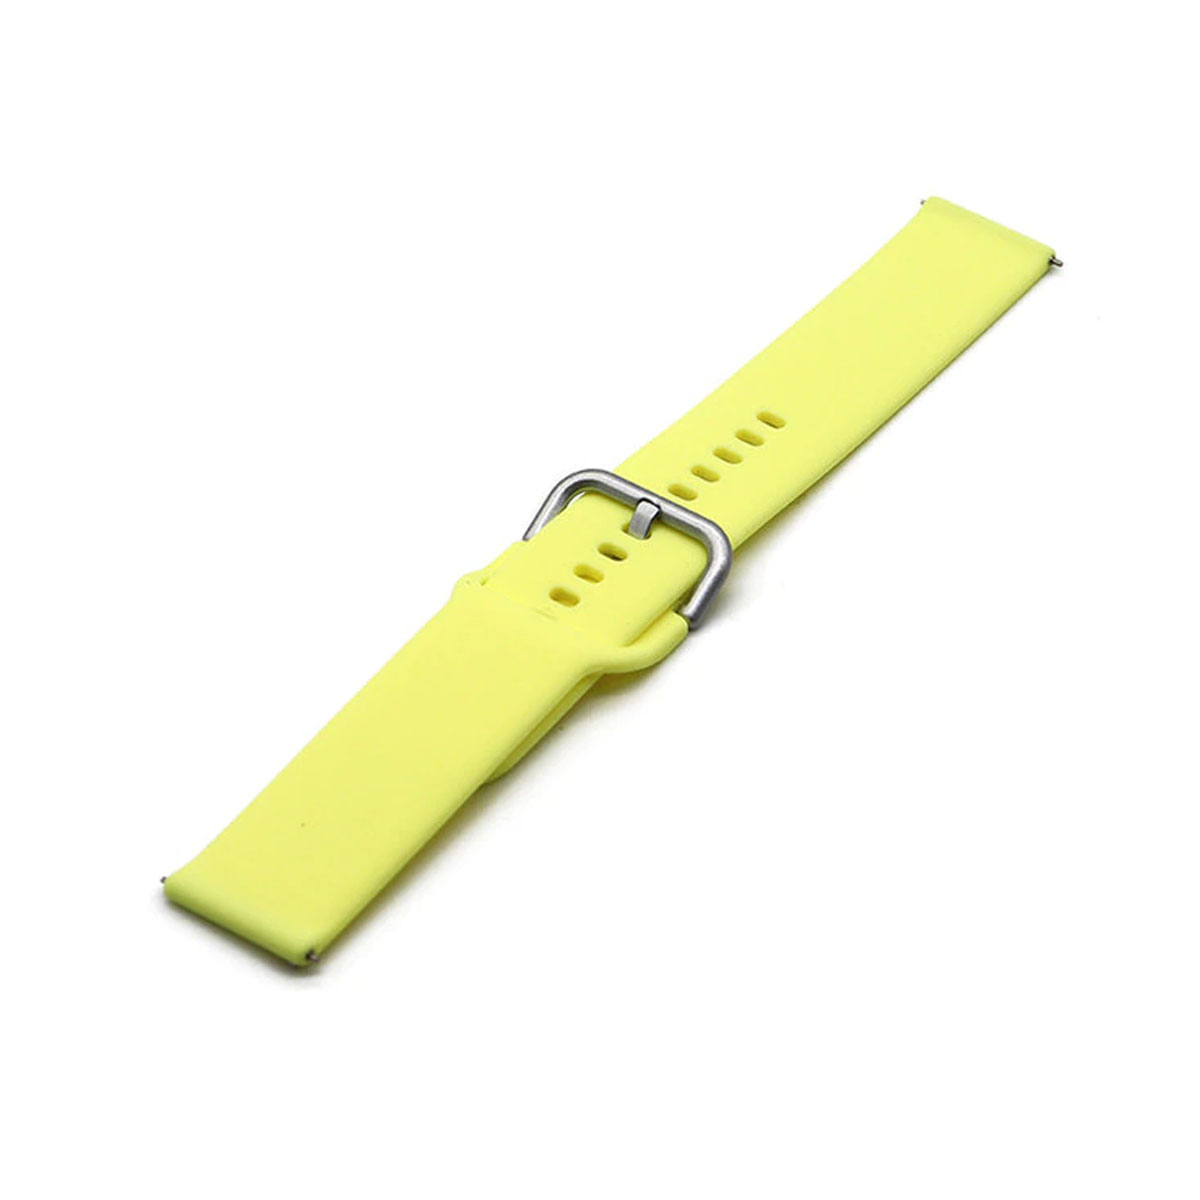 Ремешок для смарт часов универсальный 22 мм для SAMSUNG, XIAOMI, HUAWEI, силикон, цвет желтый